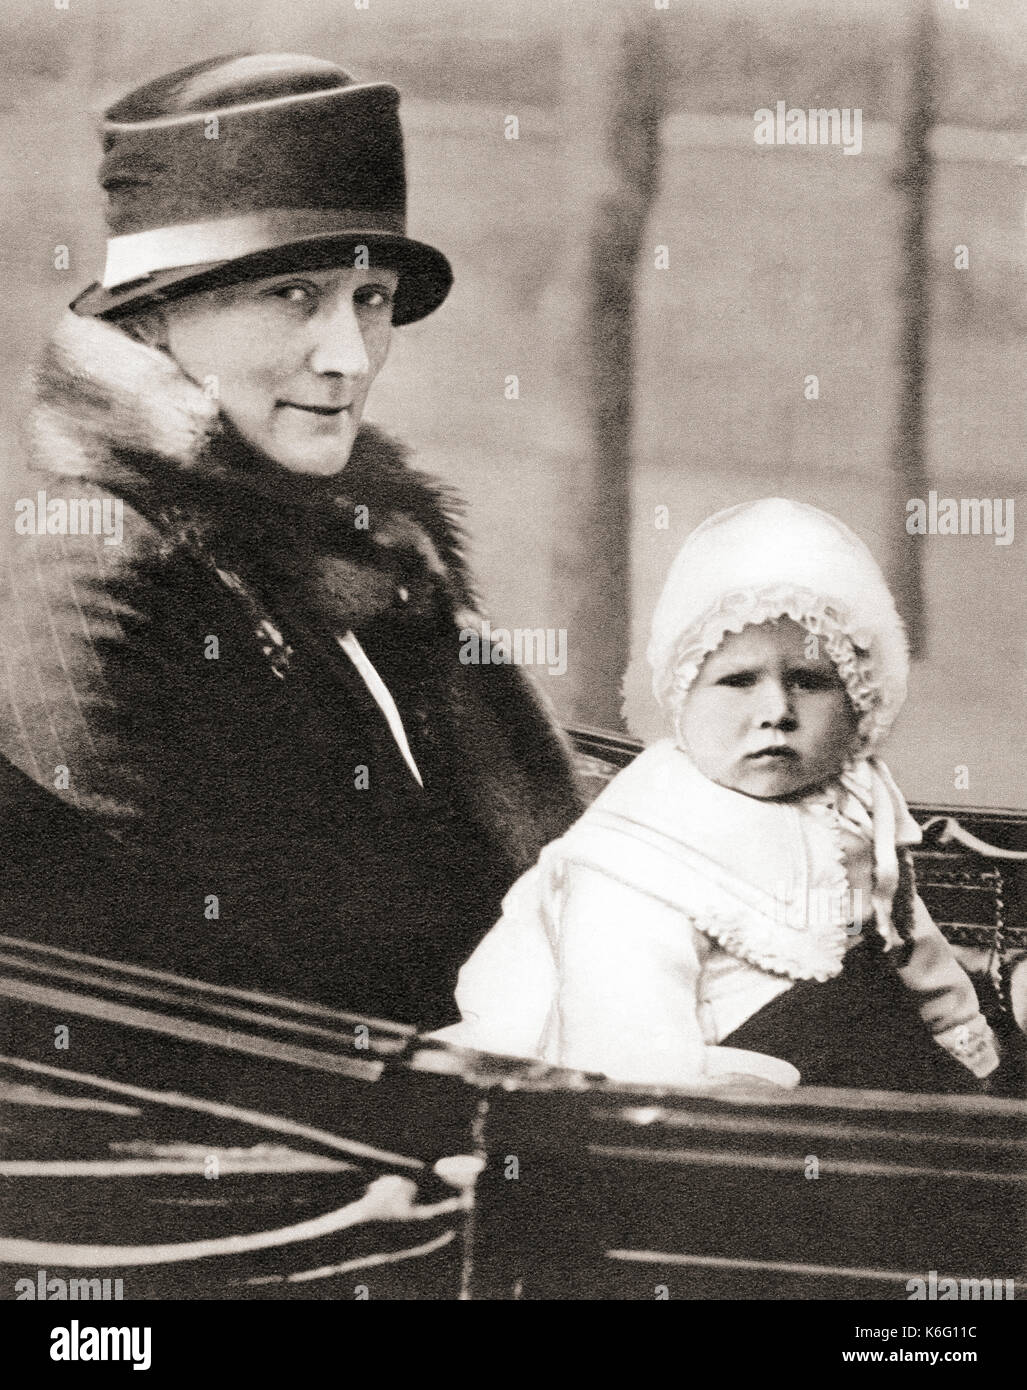 La princesse Elizabeth d'York, future reine Elizabeth II, né en 1926, vu ici en 1928 de 2 avec sa nounou, Clara Chevalier, connu sous le nom de 'Allah'. Le Livre de couronnement du roi George VI et La Reine Elizabeth, publié 1937. Banque D'Images